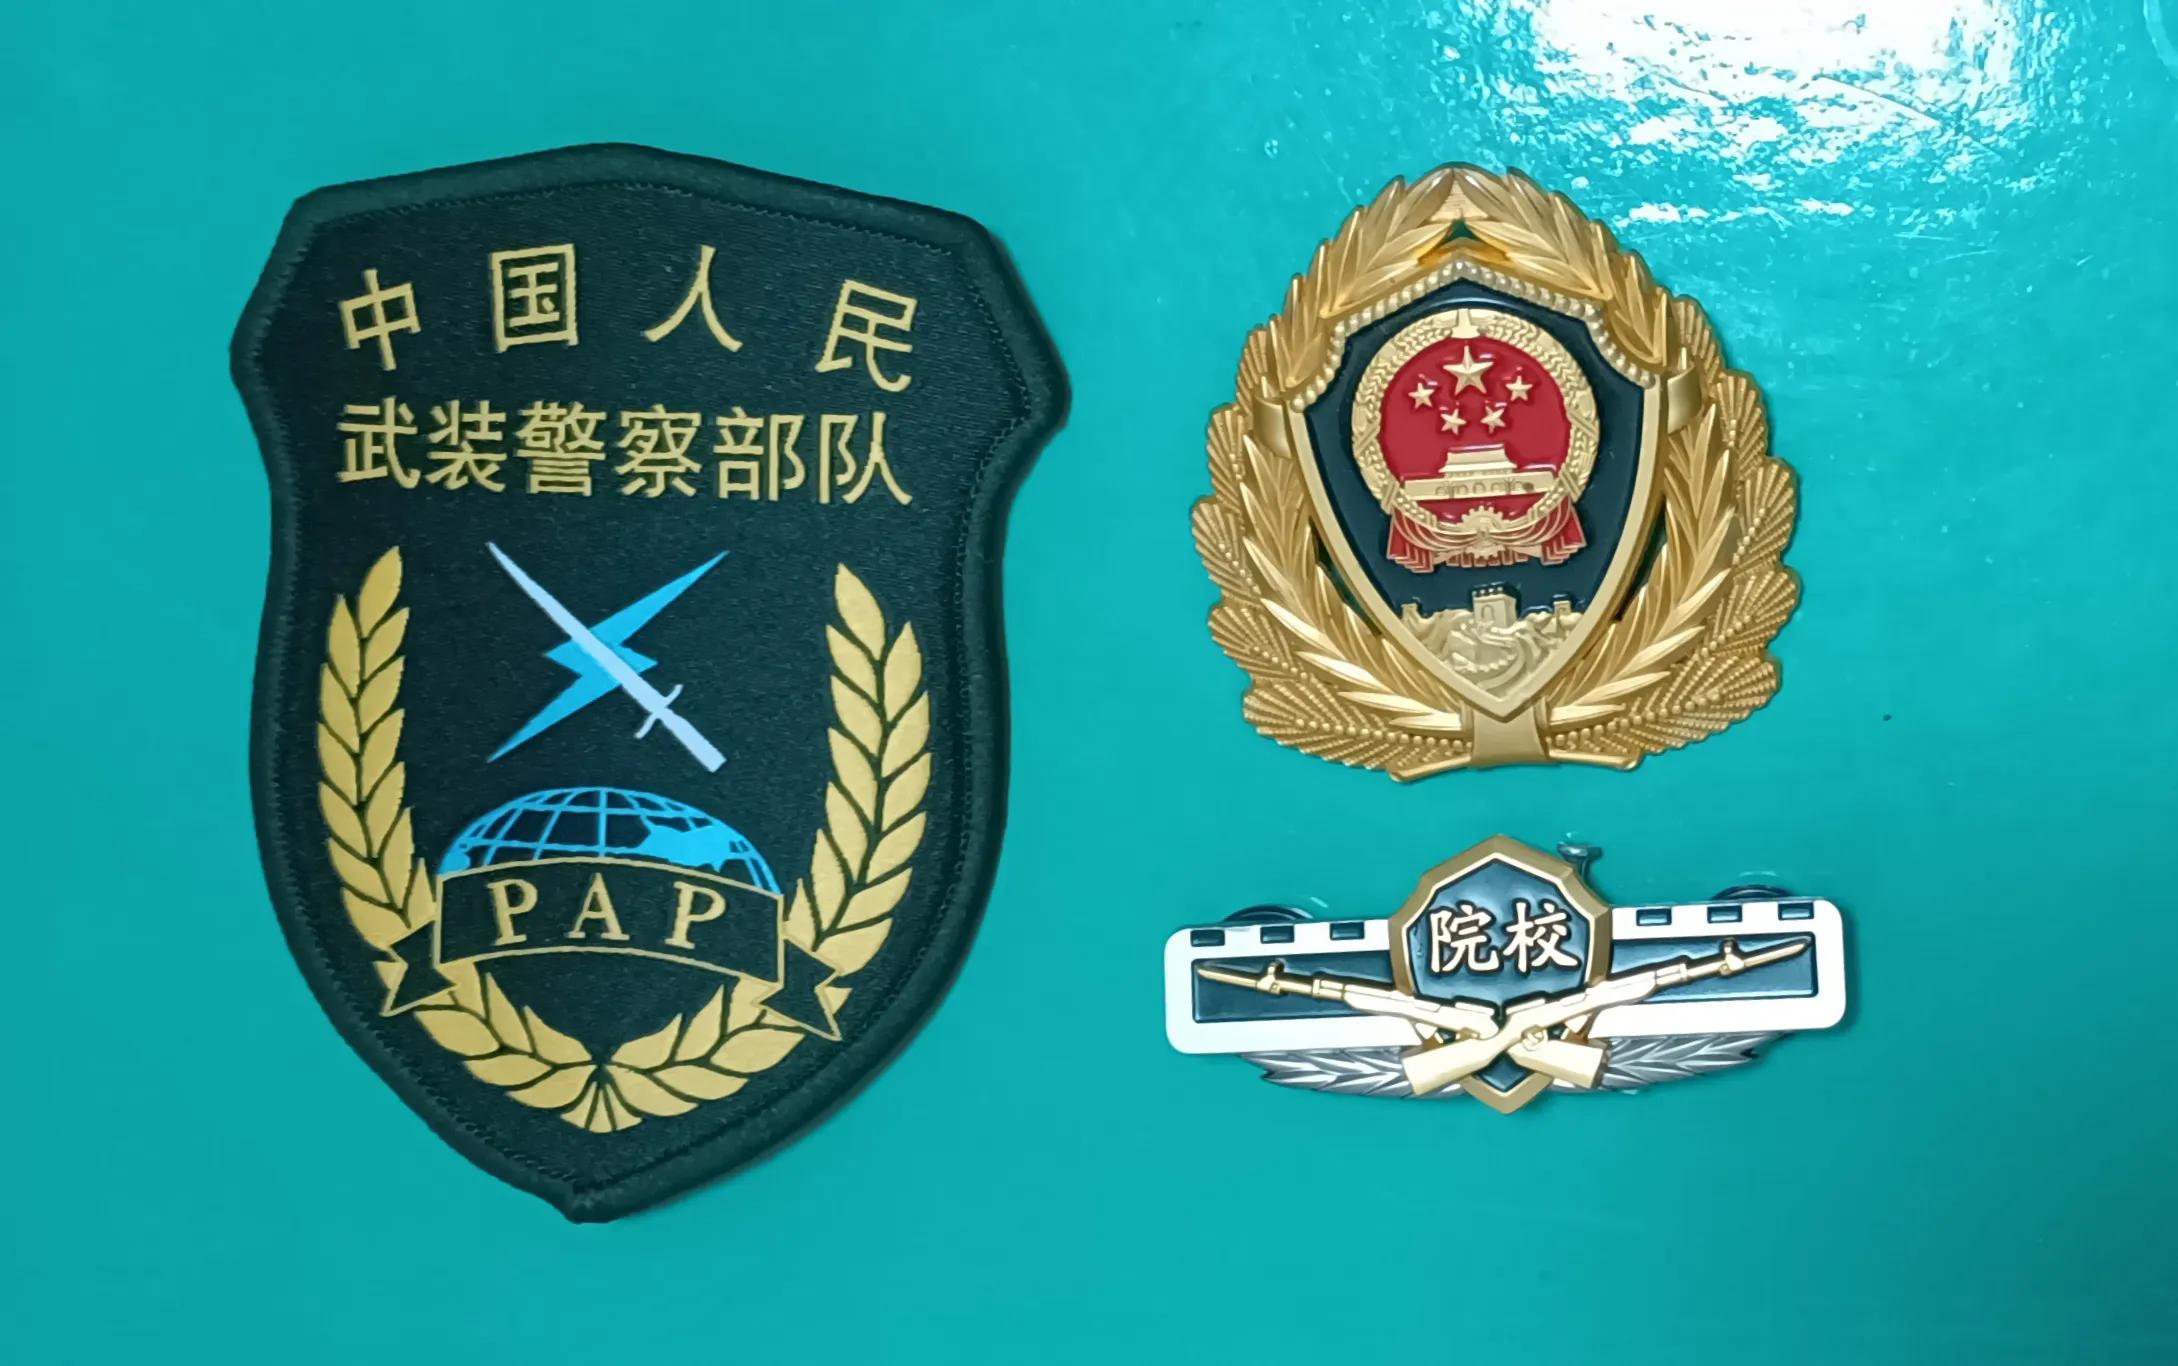 武装警察臂章图片